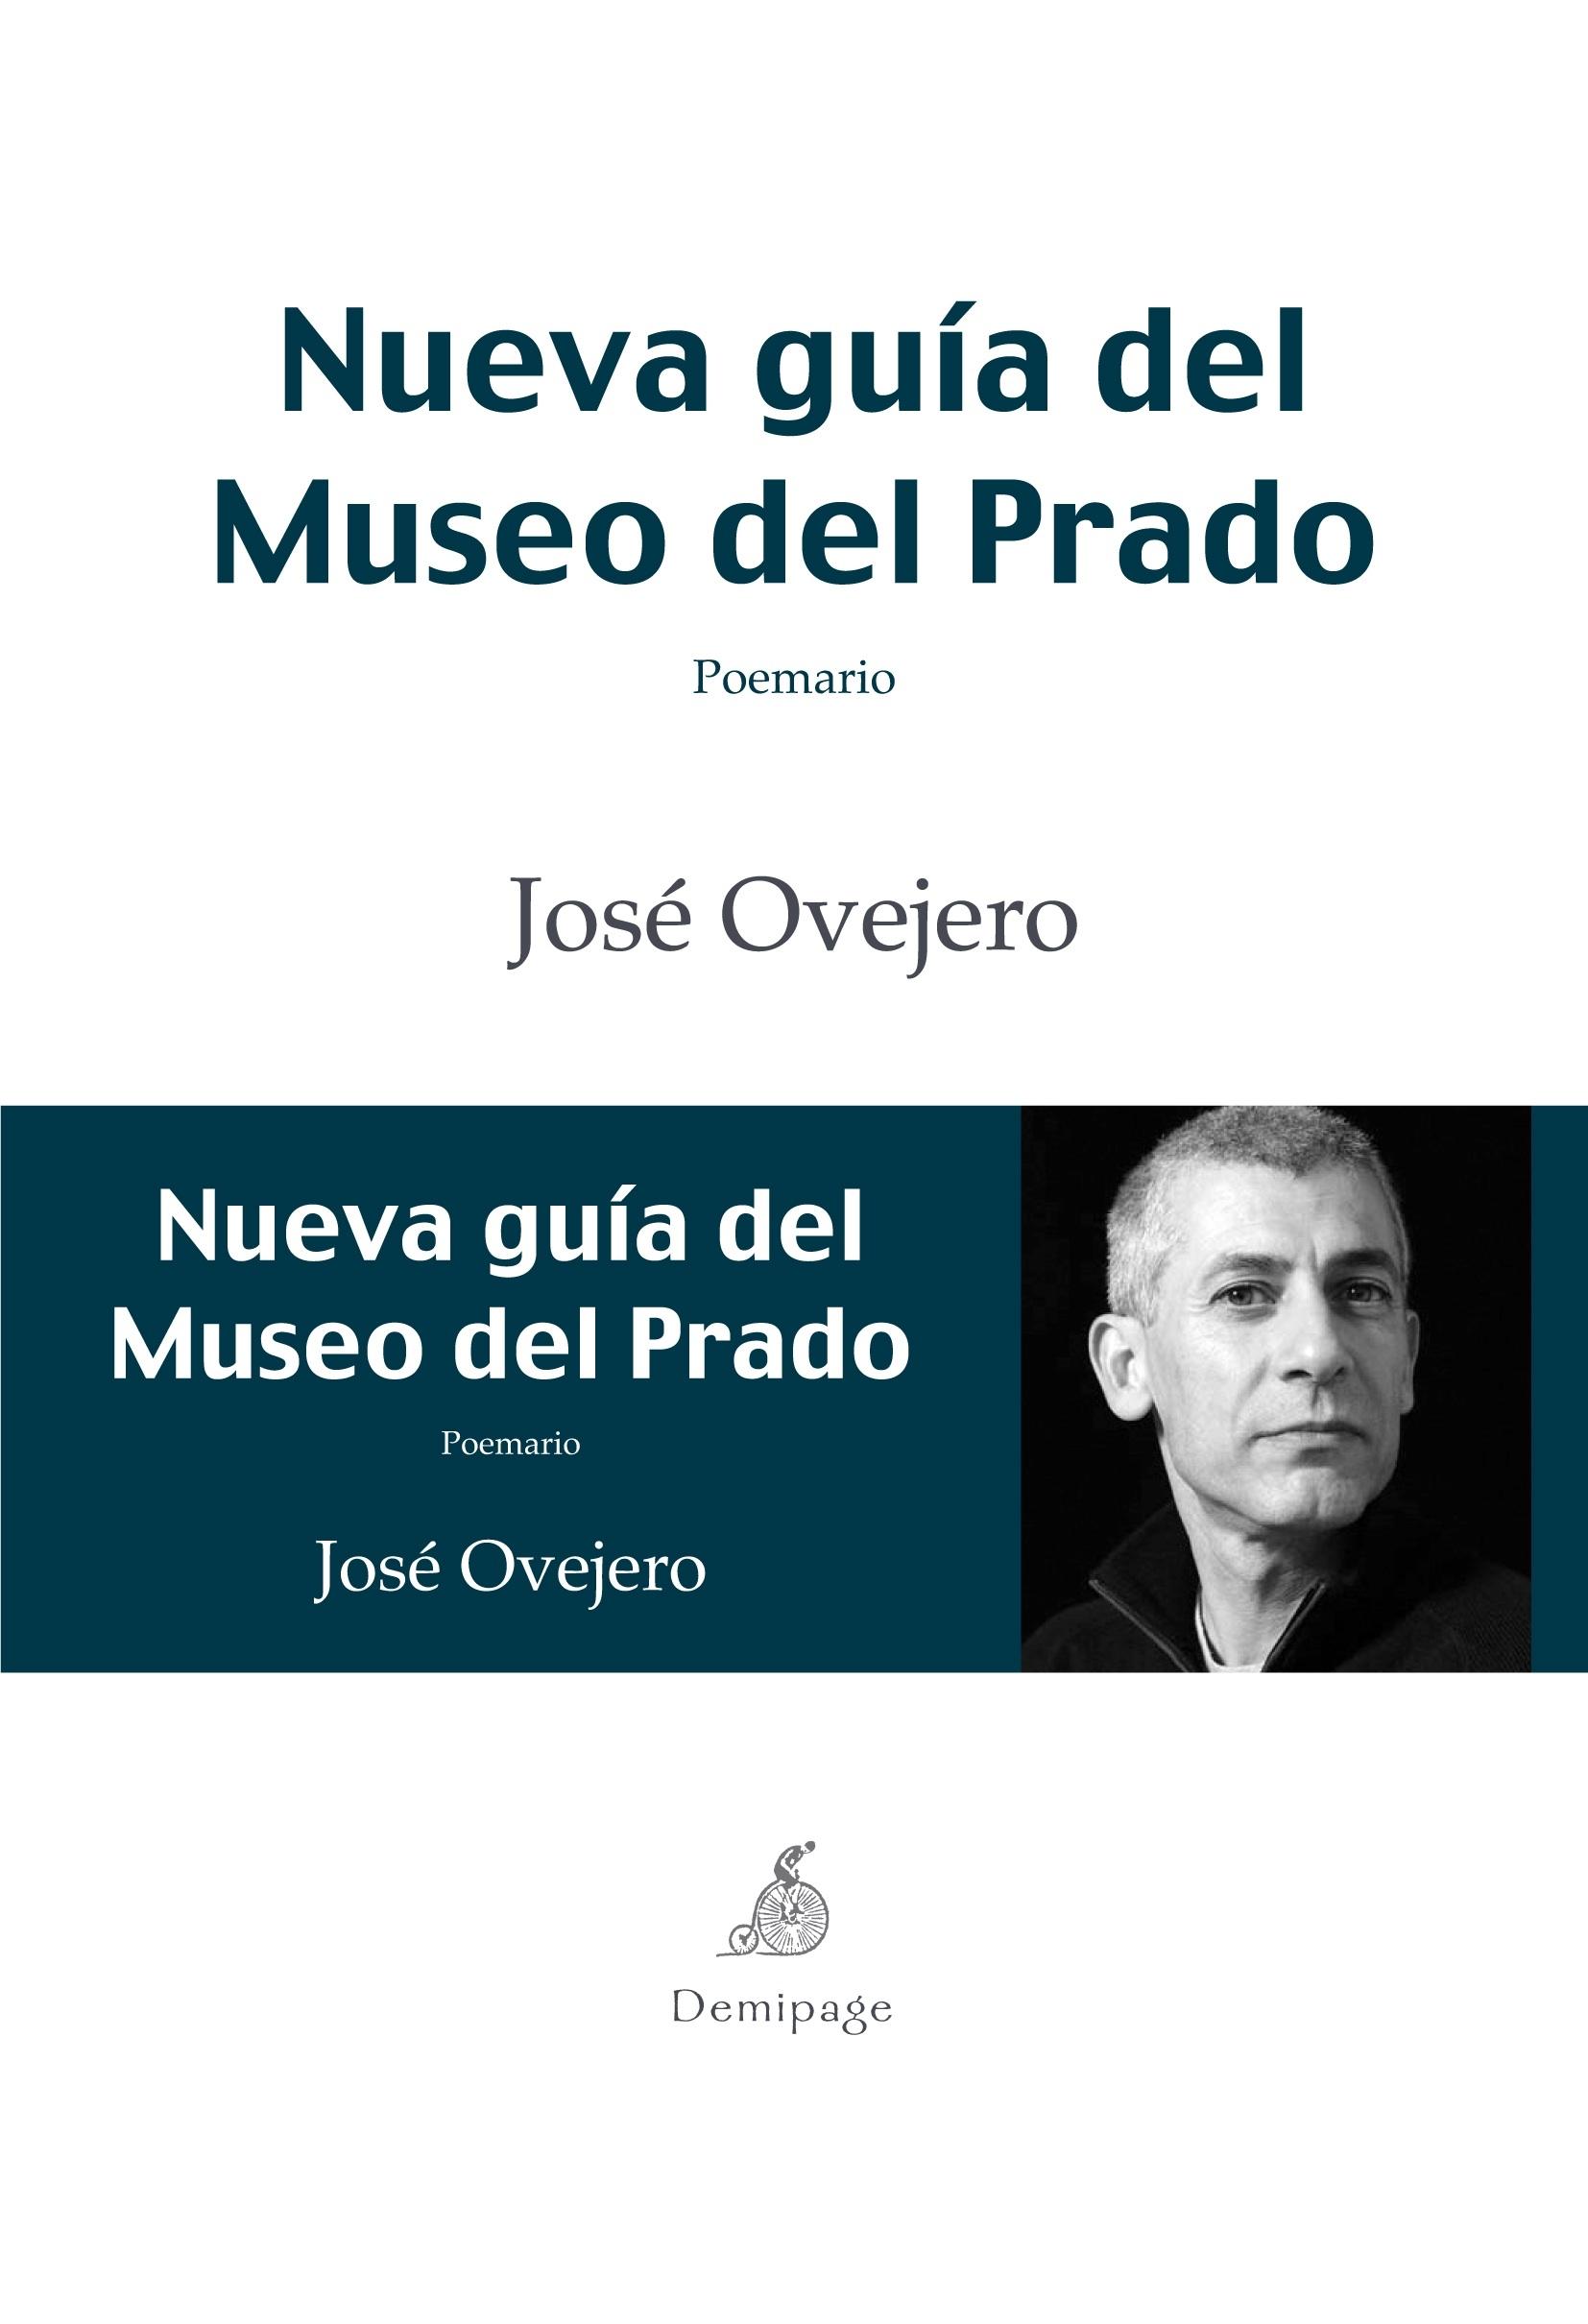 Nueva guia del Museo del Prado "Poemario". 